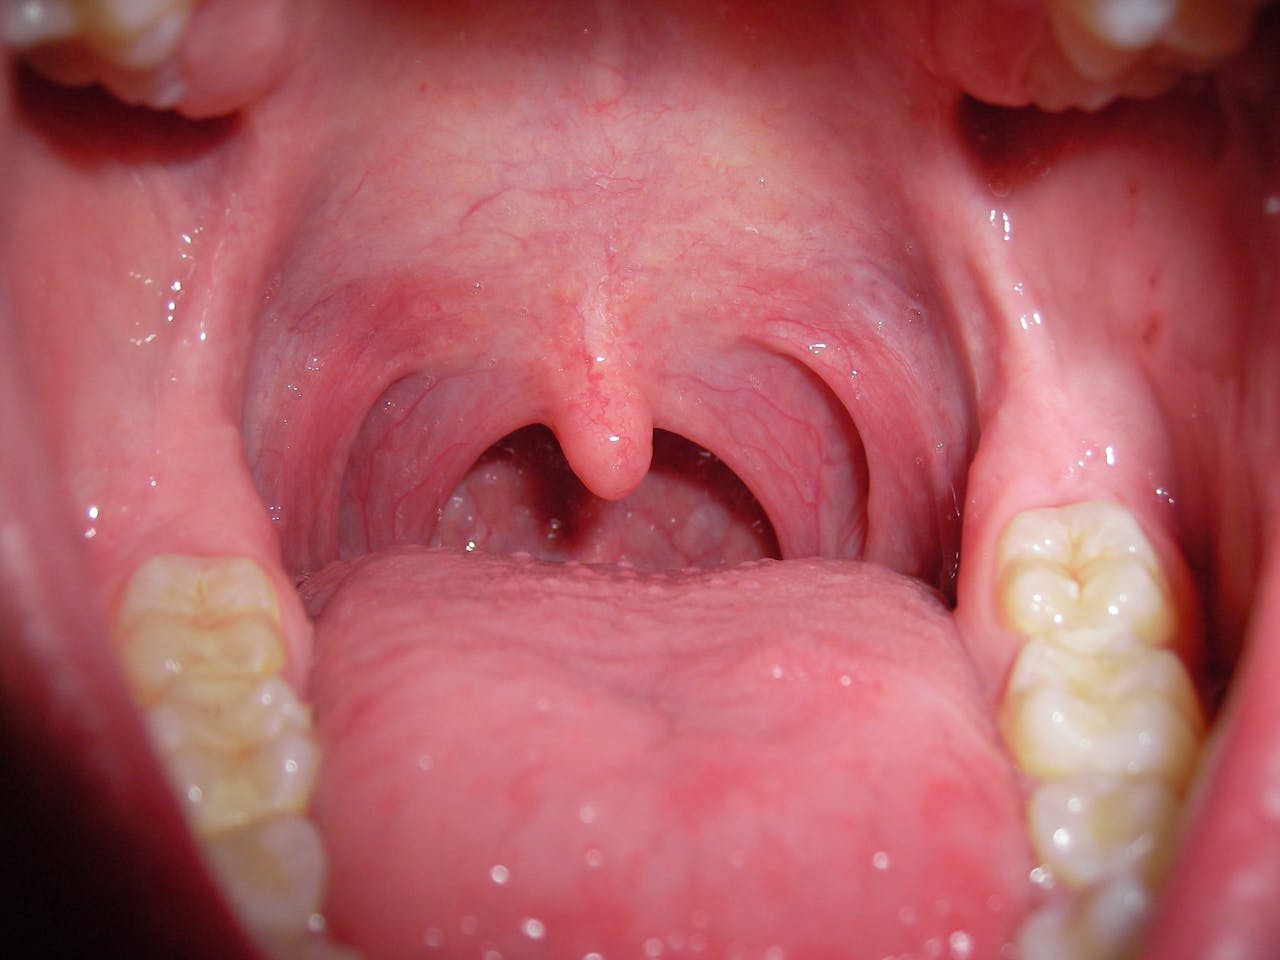 Een close-up van een geopende mond. De tanden, tong en huig zijn duidelijk zichtbaar.